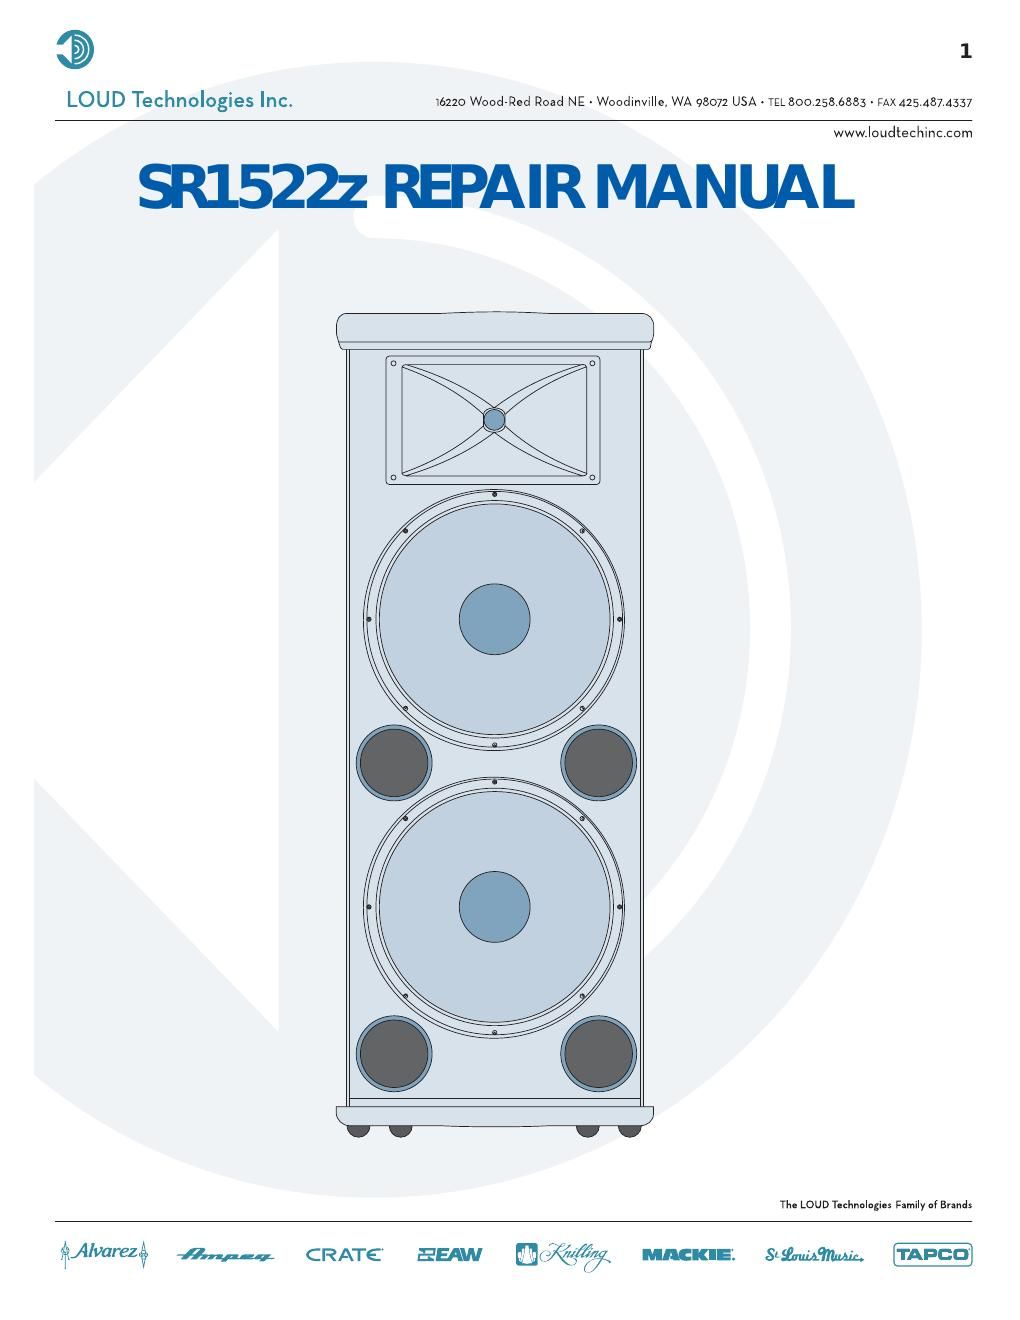 Mackie SR1522z Repair Manual